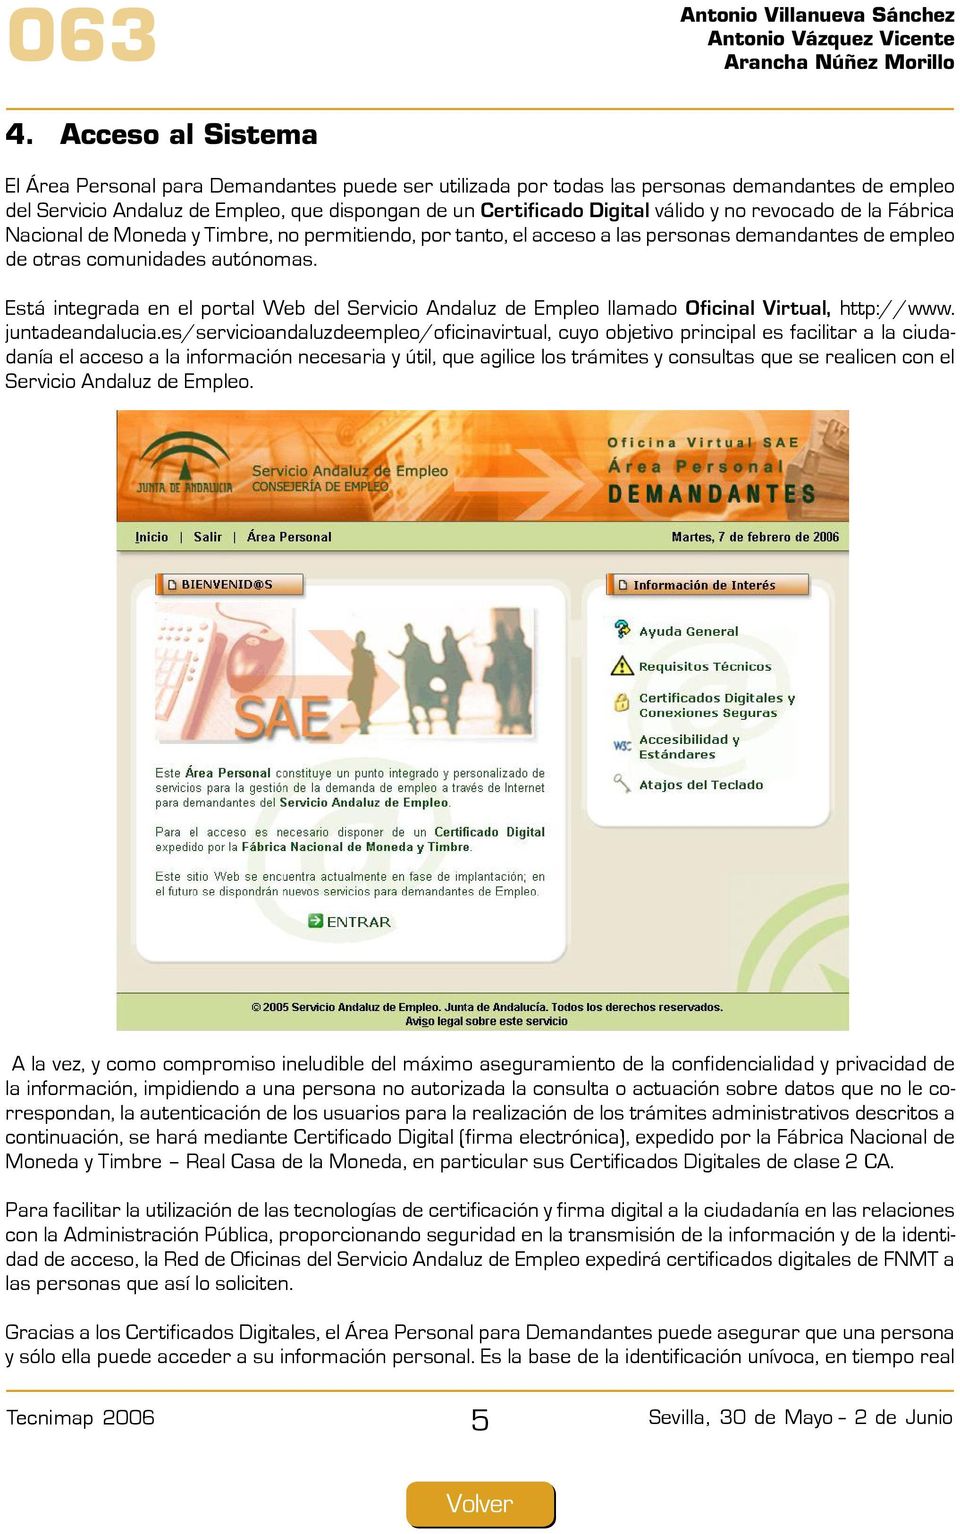 Está integrada en el portal Web del Servicio Andaluz de Empleo llamado Oficinal Virtual, http://www. juntadeandalucia.